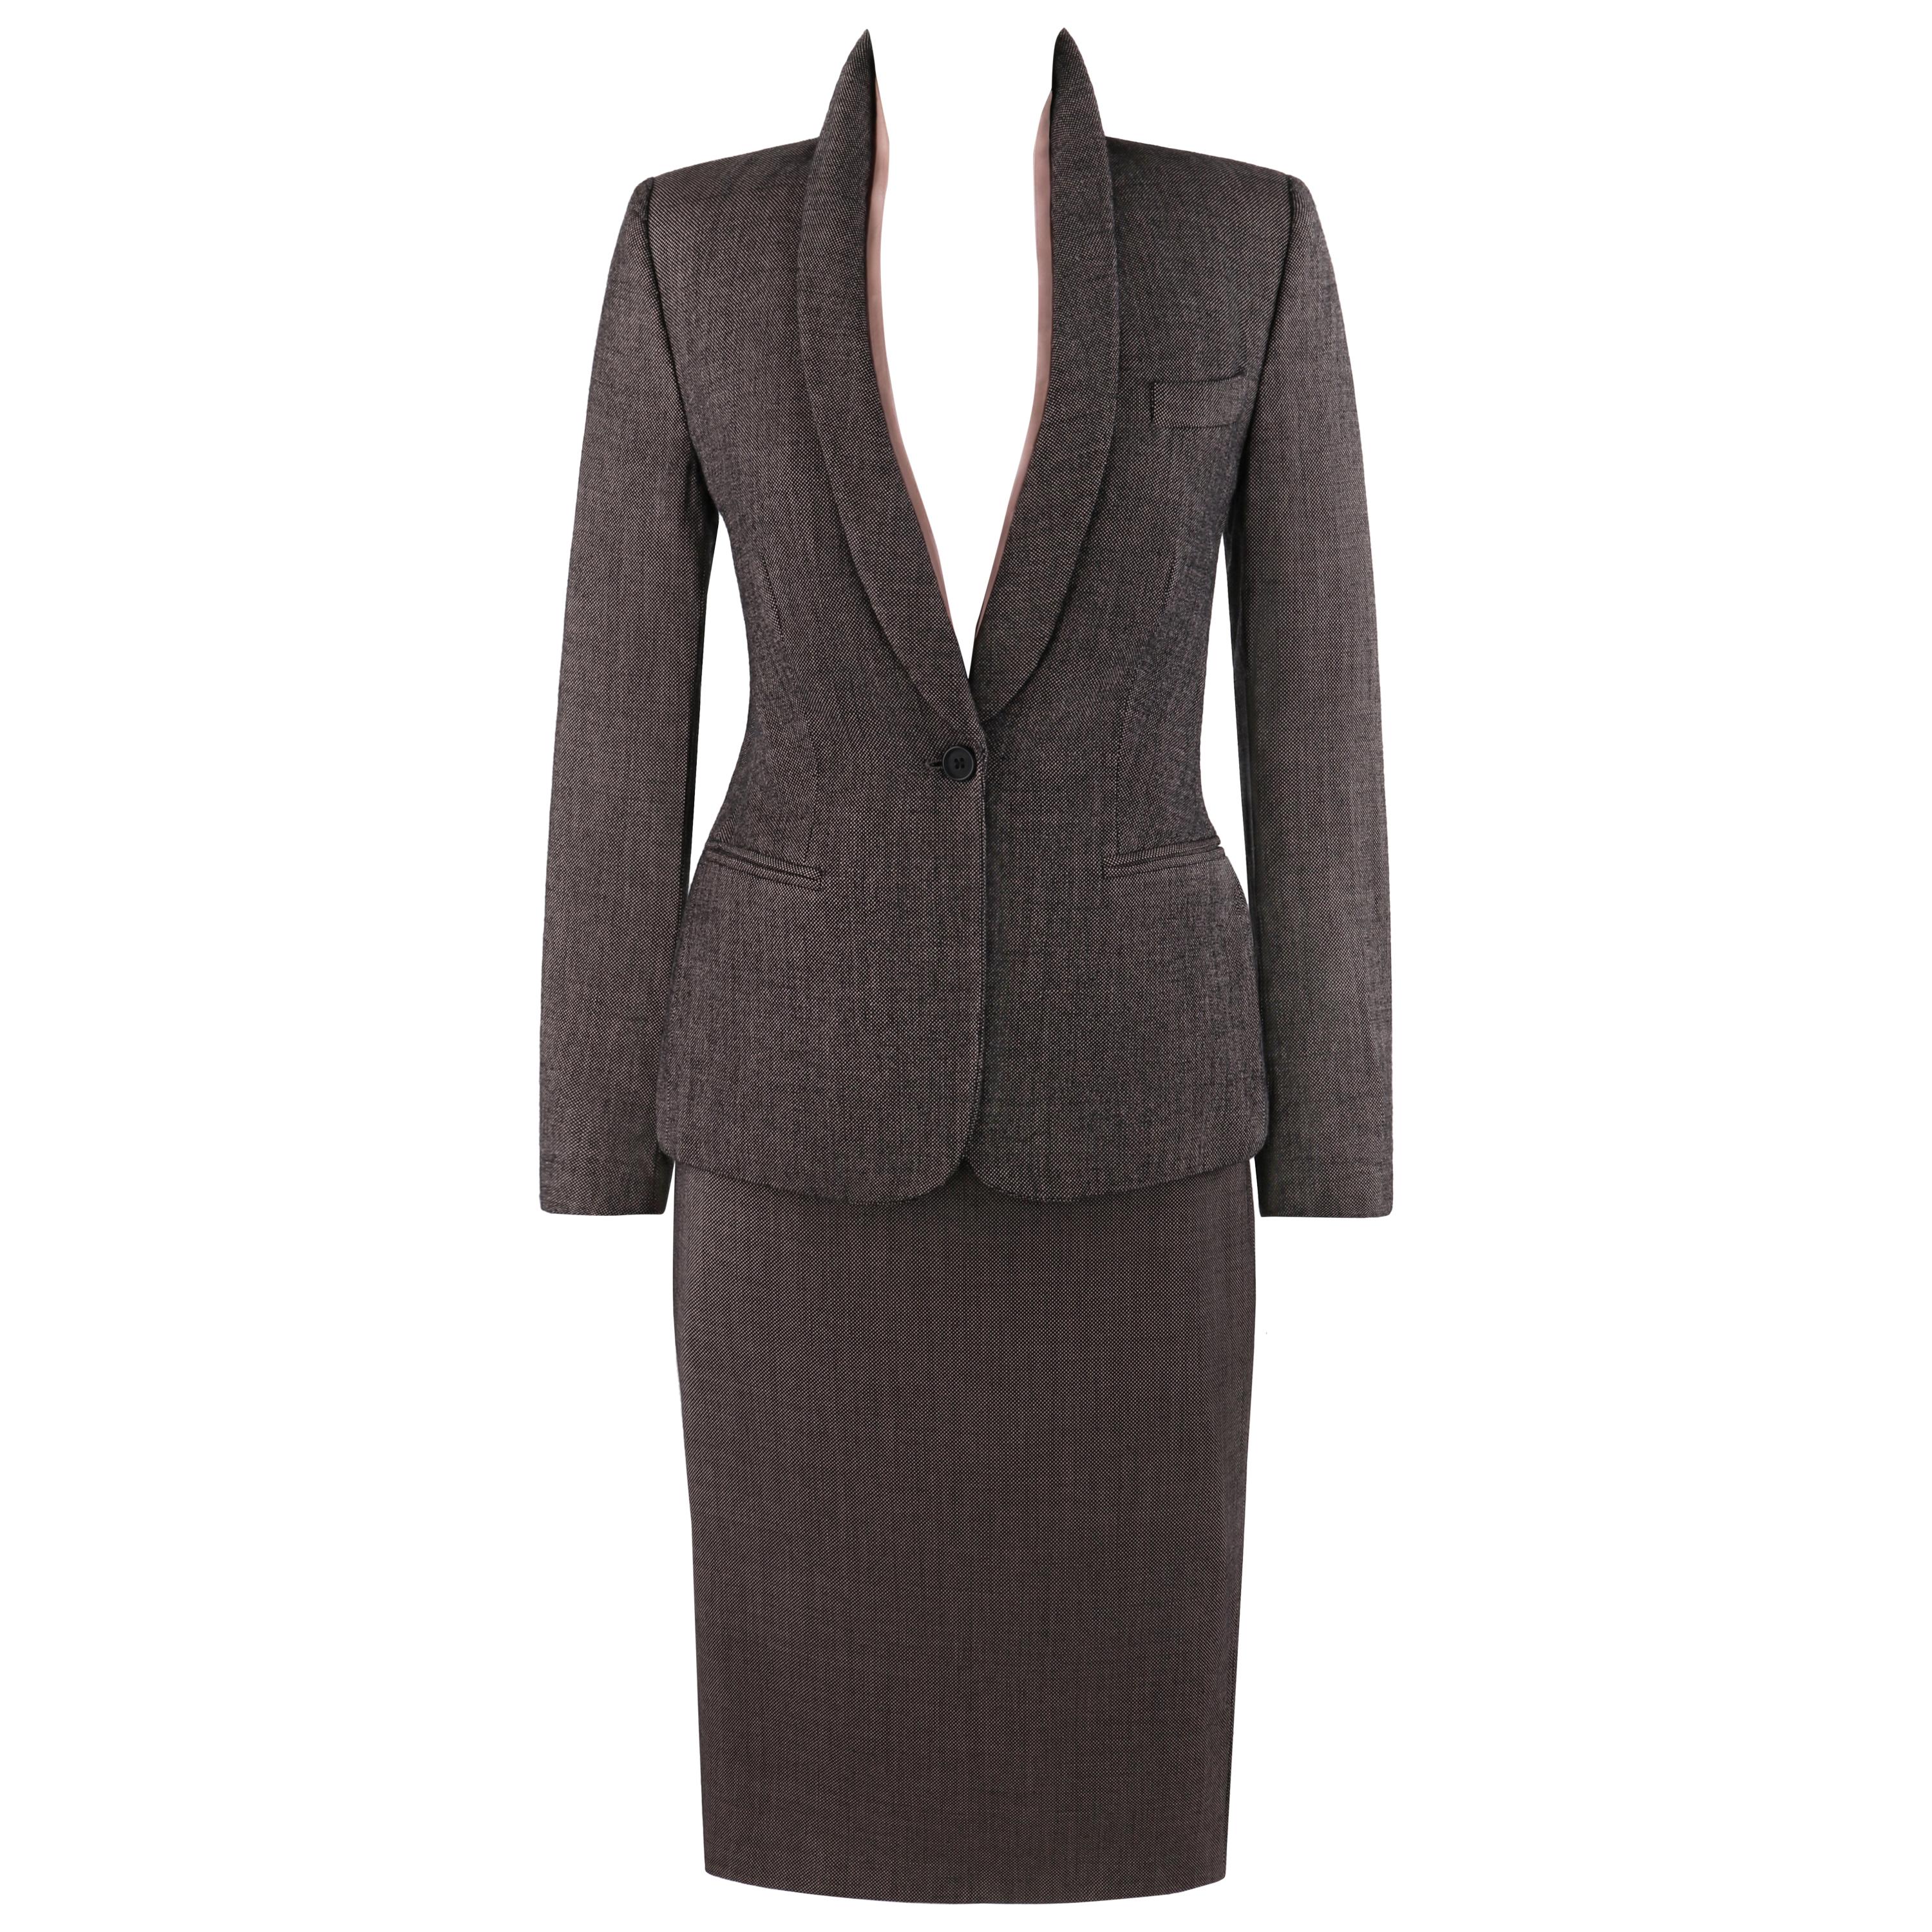  ALEXANDER McQUEEN A/W 1998 “Joan” 2 pc. Removable Collar Blazer Skirt Suit Set